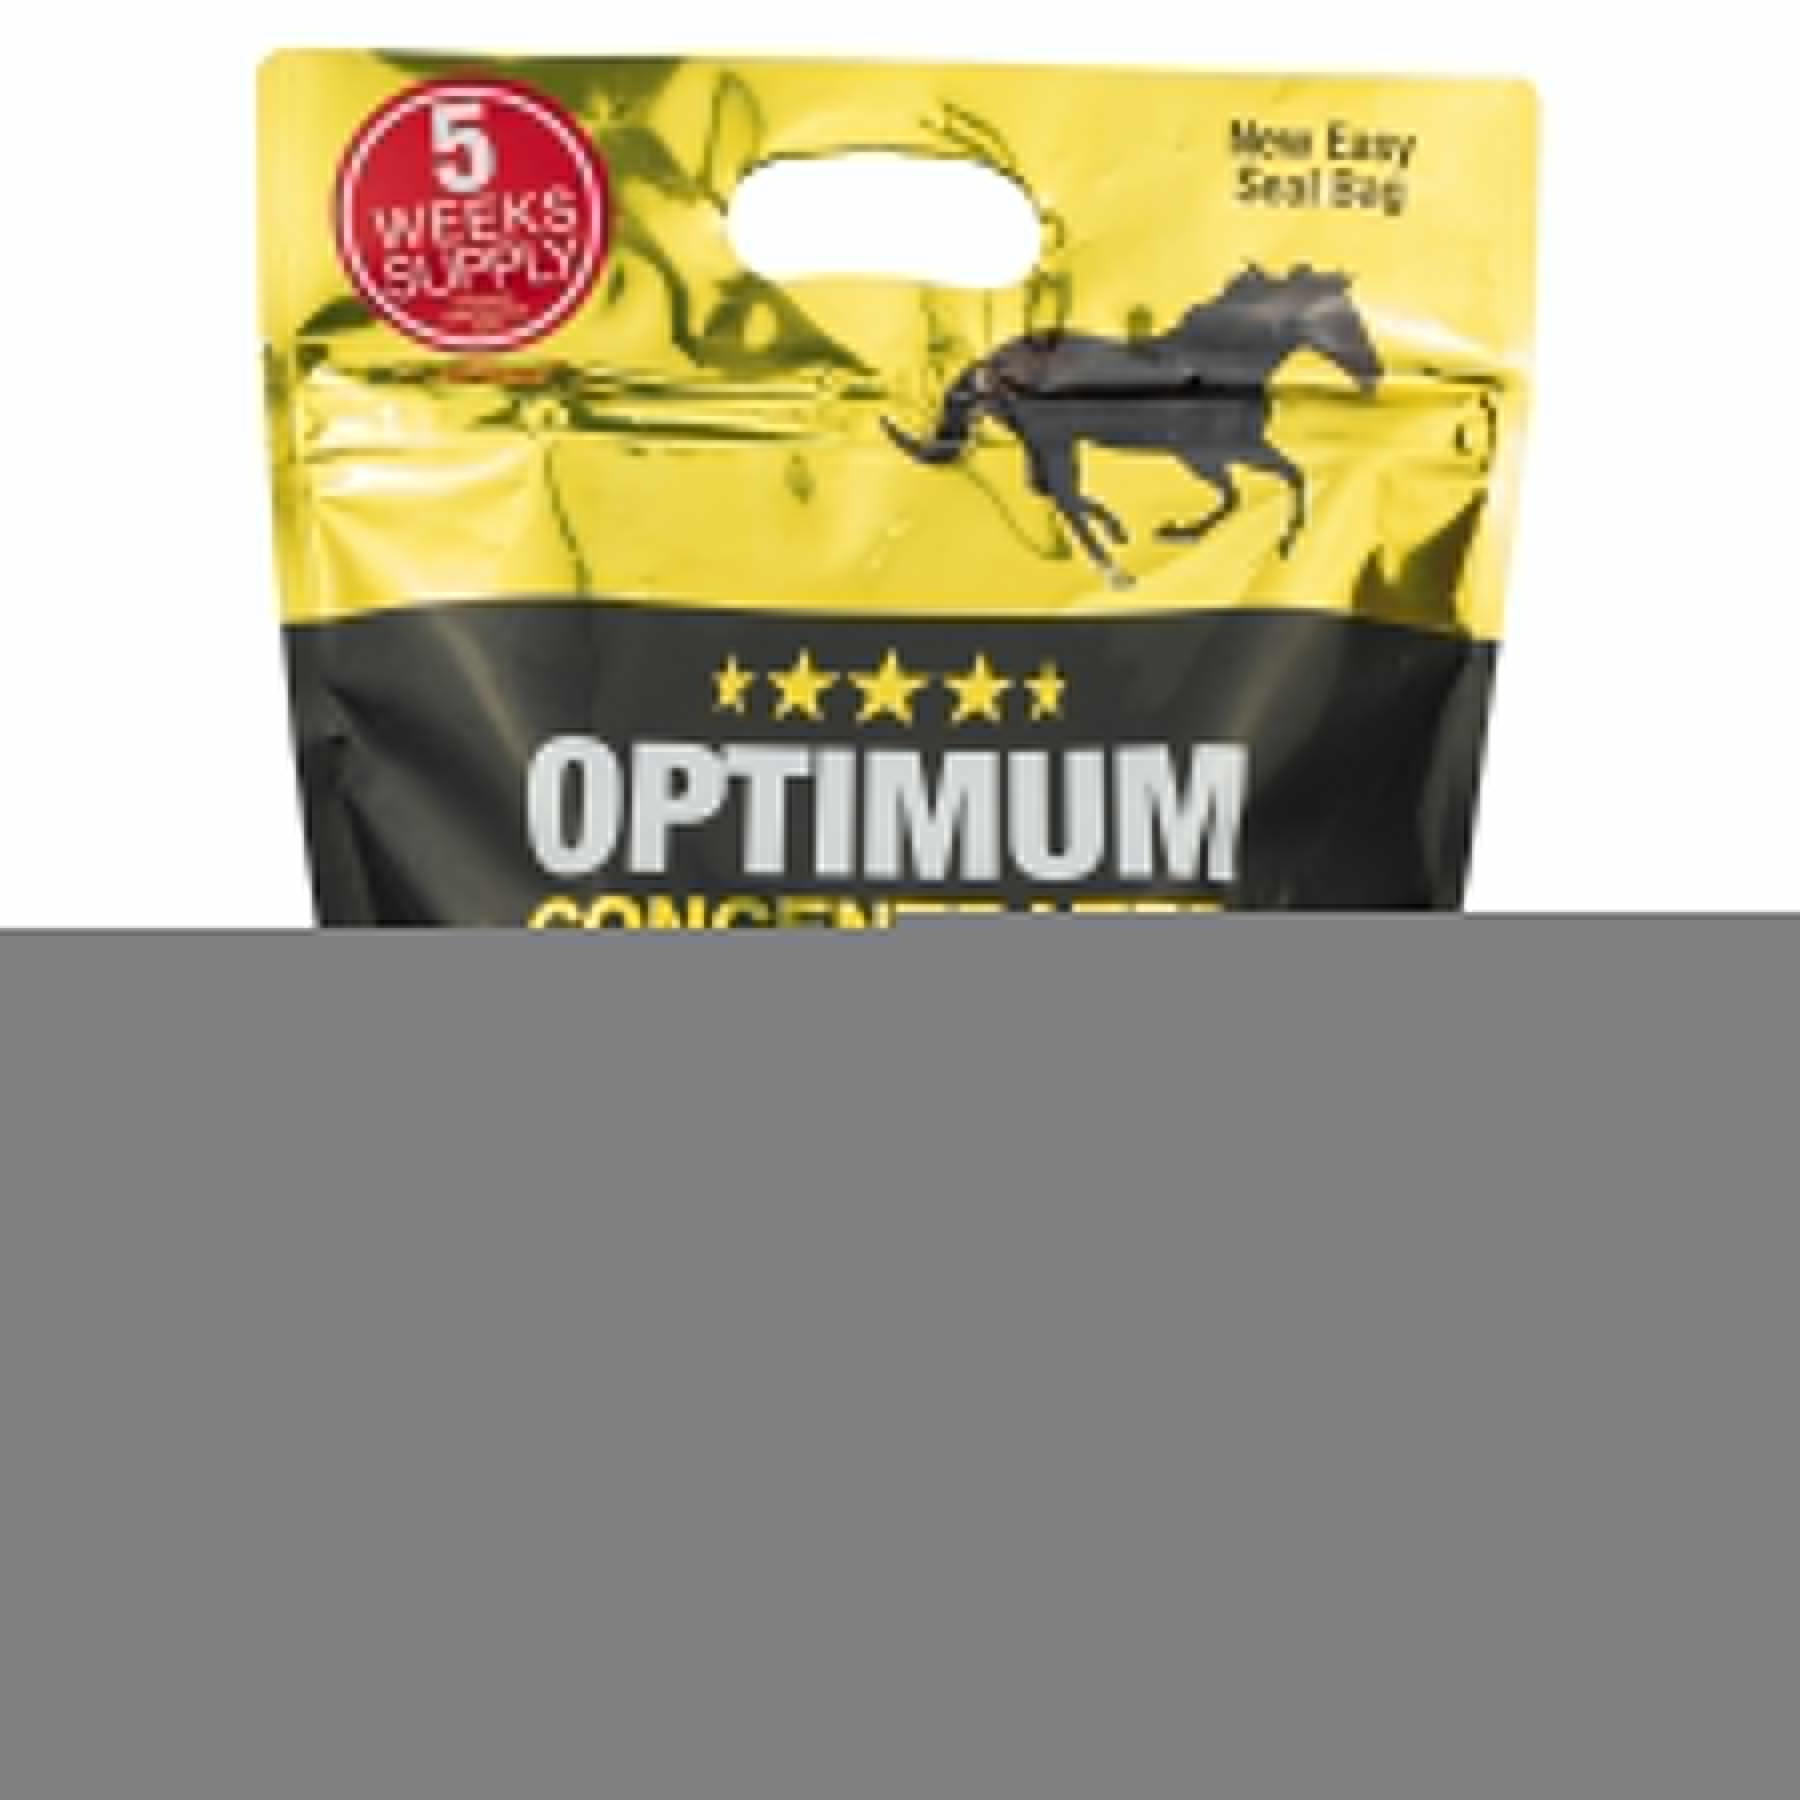 Vitaminen en mineralen voor paarden NAF Optimum Feed Balancer